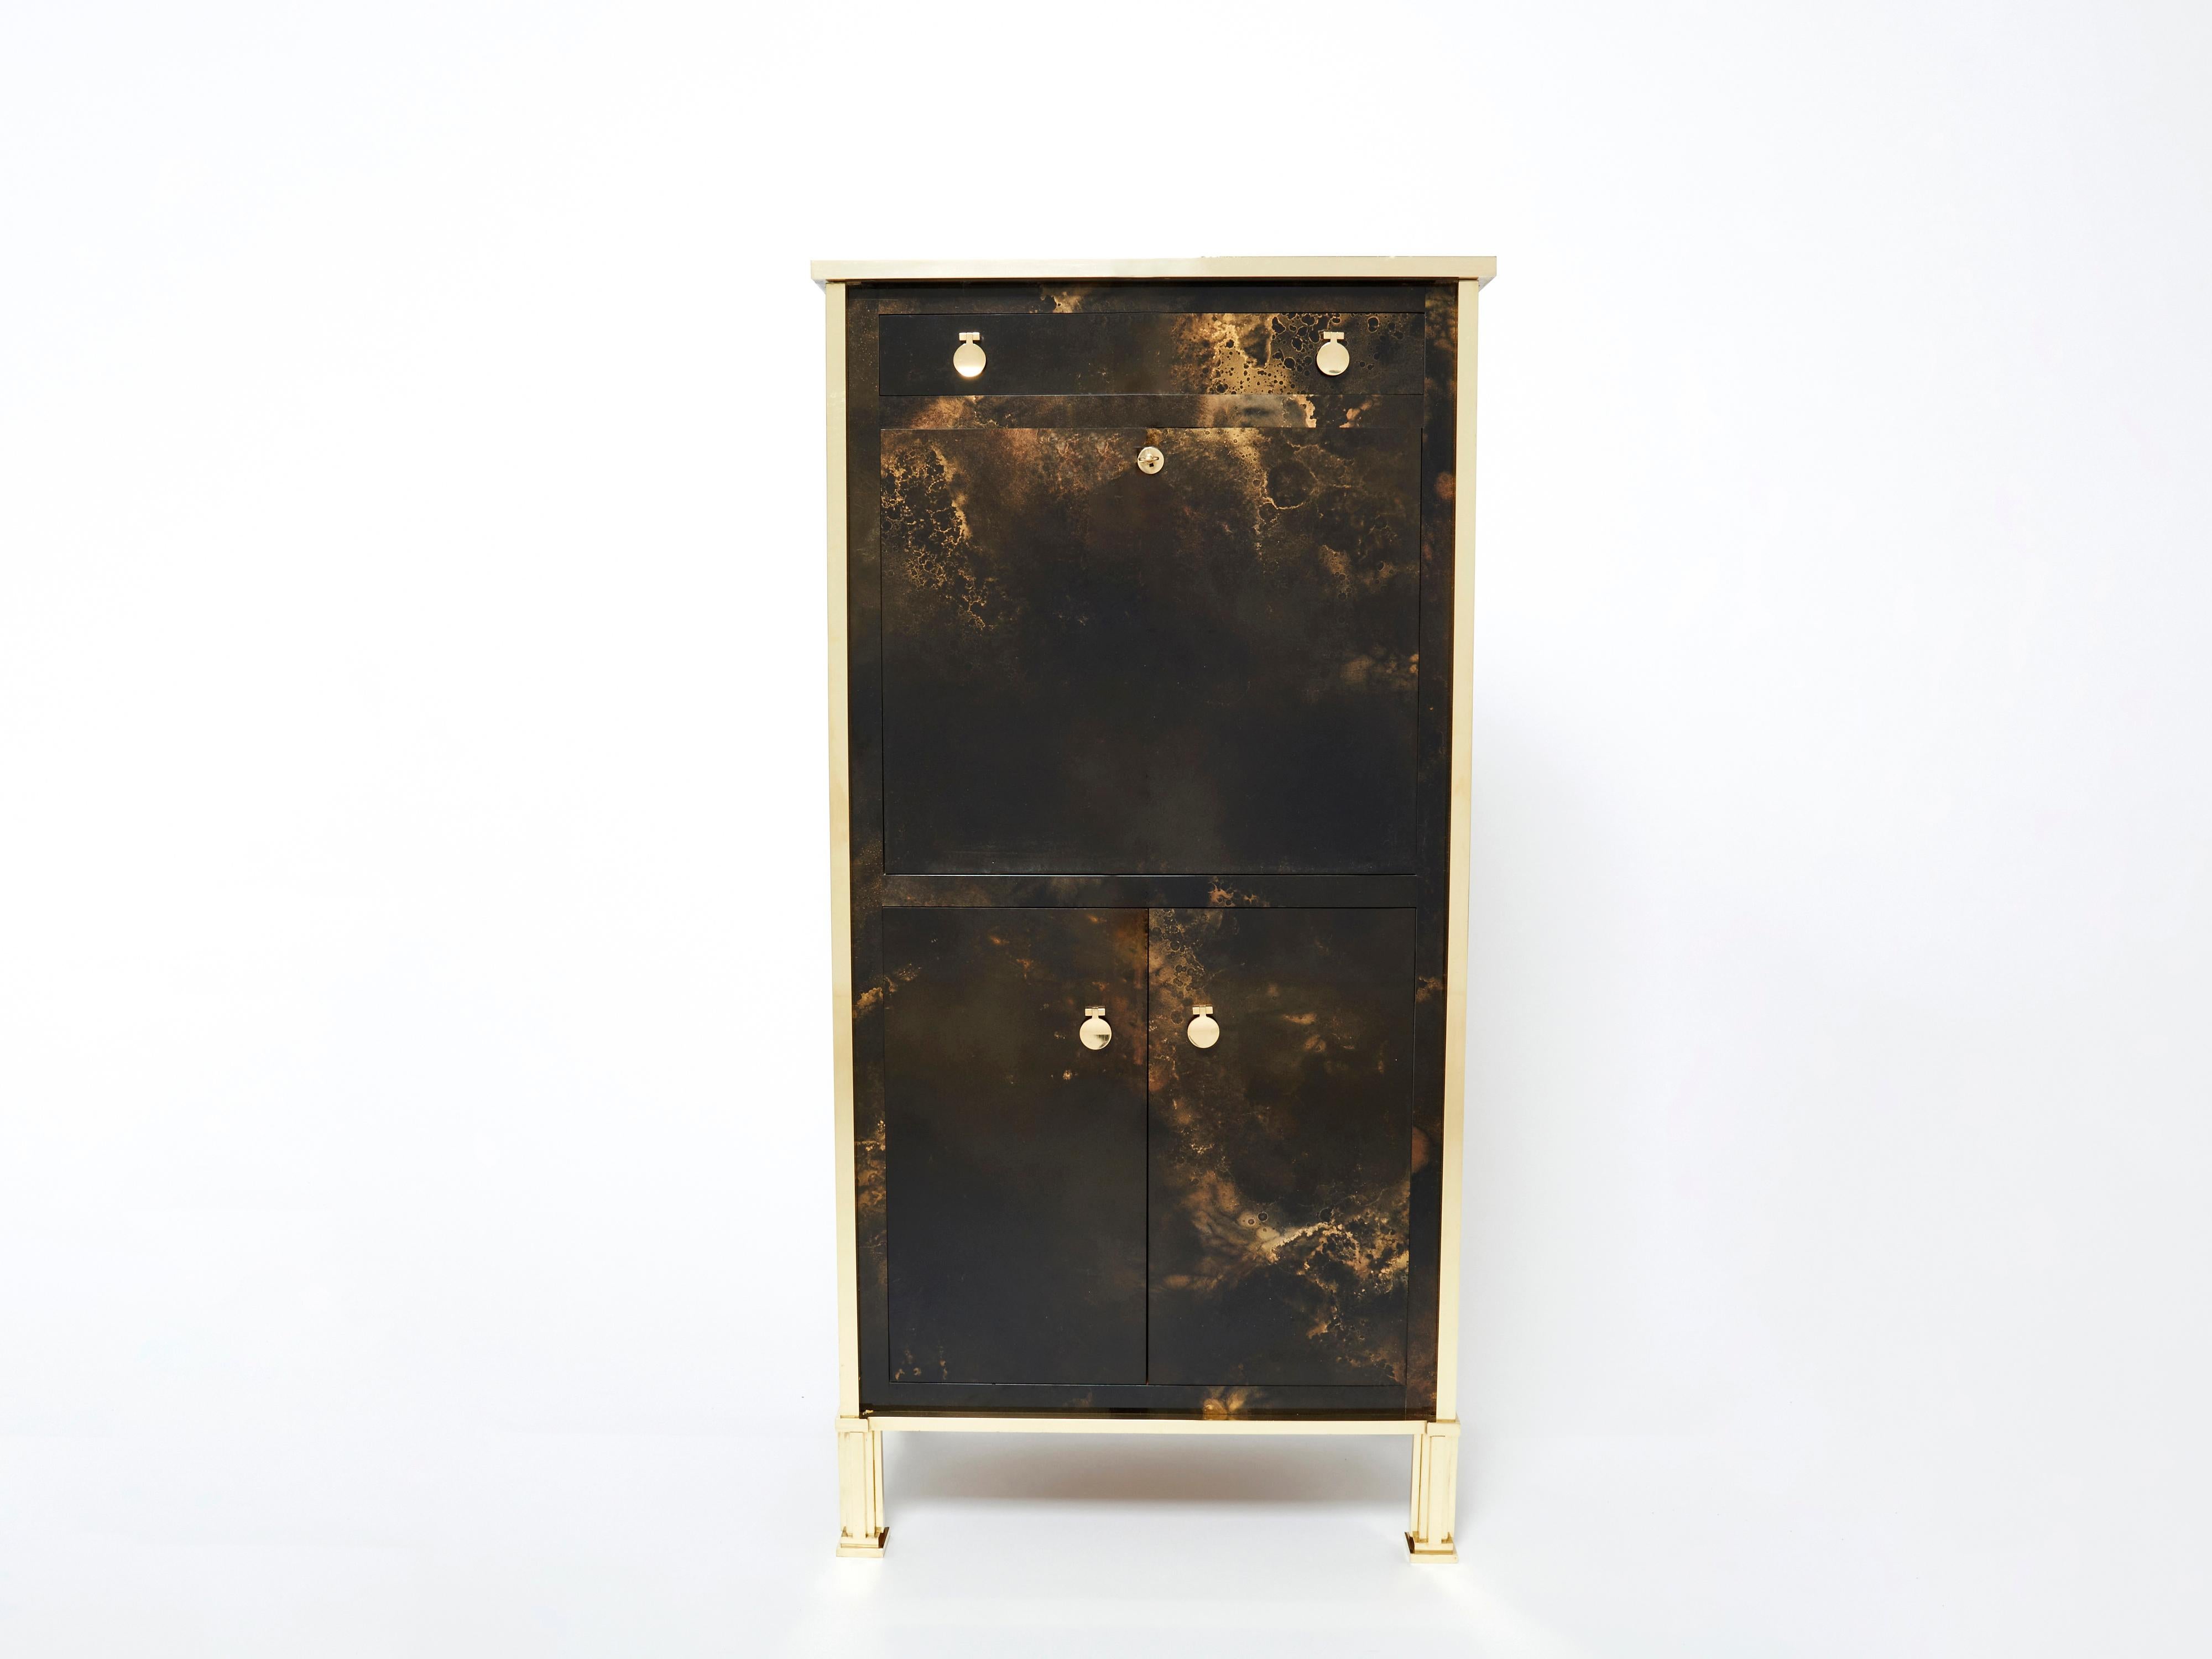 Un exemple passionnant des pièces commandées par la Maison Jansen, une entreprise de design française. Ce meuble secrétaire est fabriqué en acajou massif, laqué dans une riche finition brun foncé et bronze doré. L'effet obtenu est une magnifique